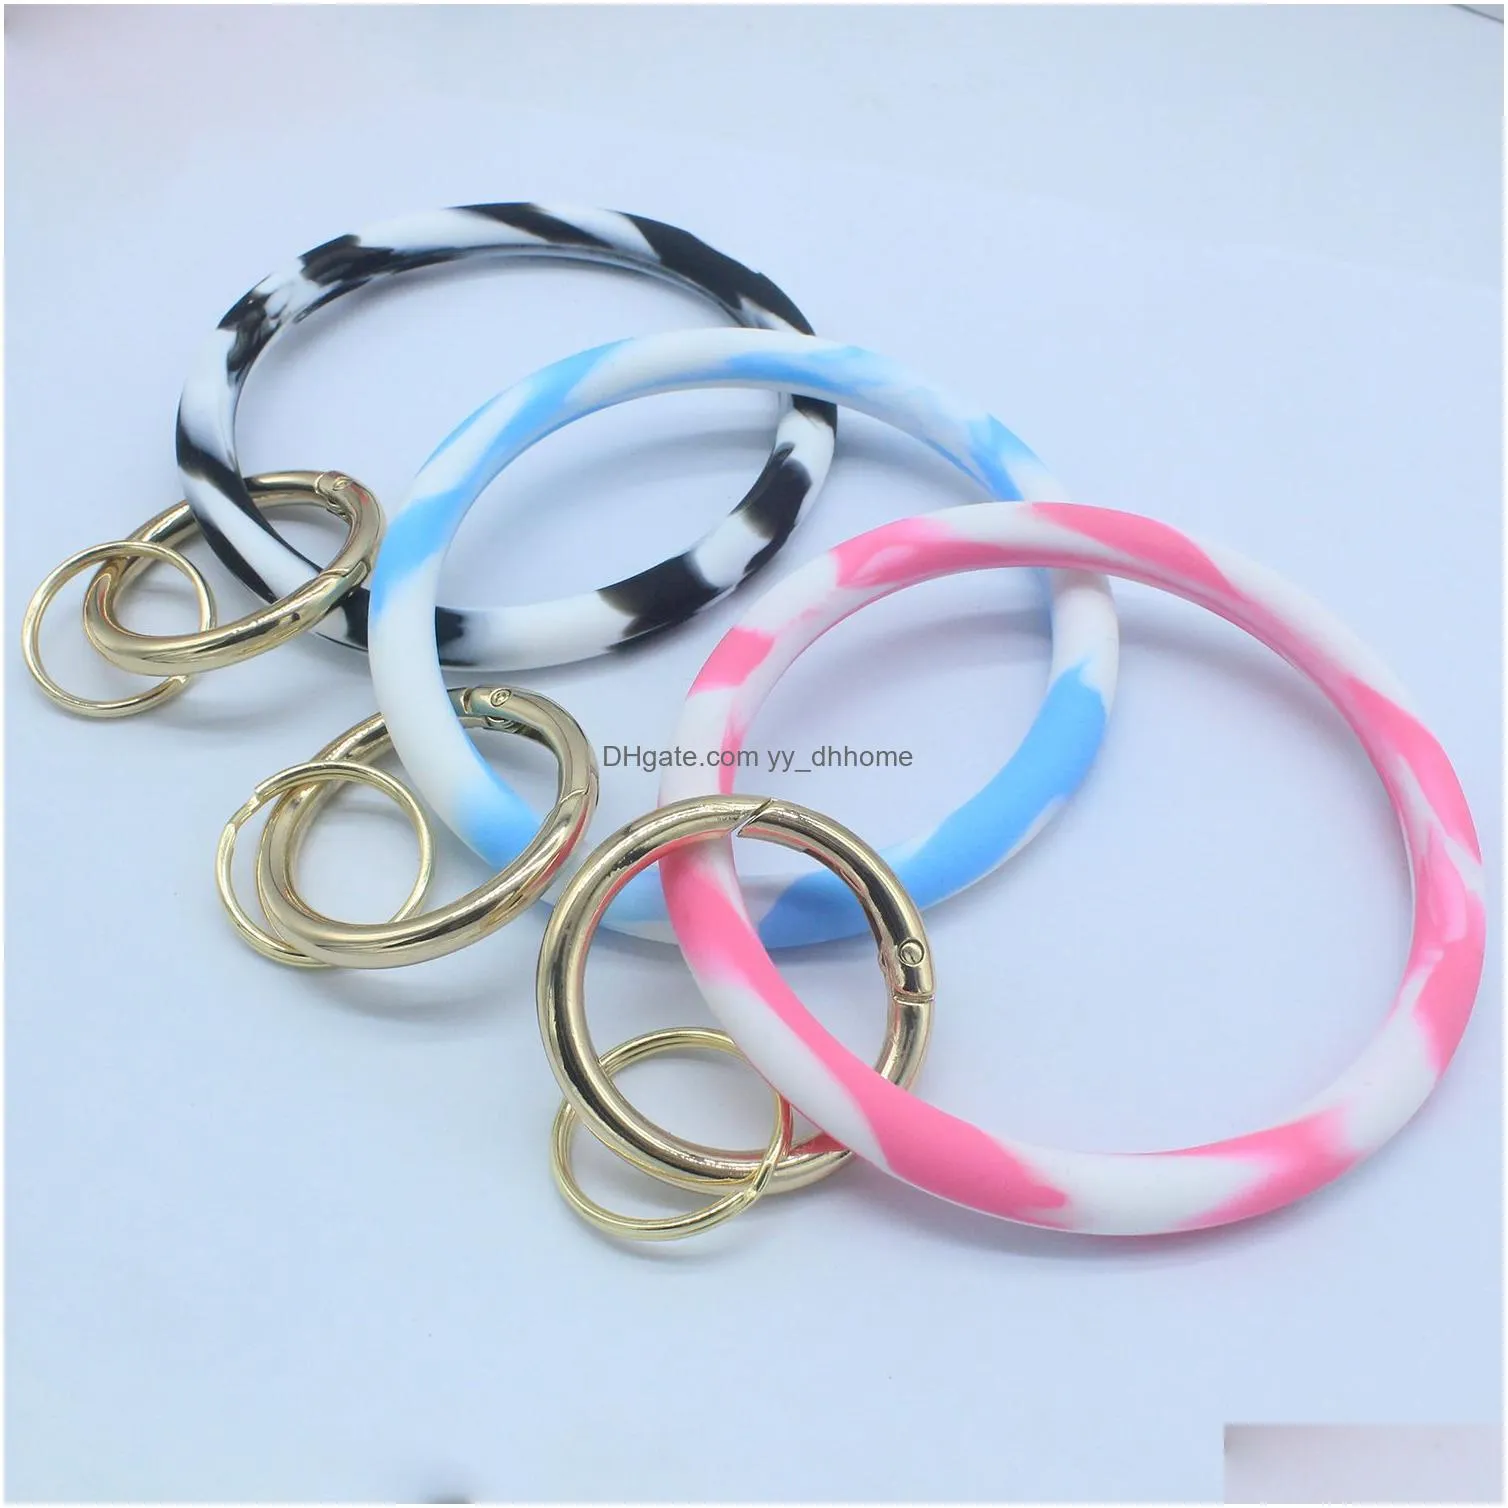 ins fashion monogrammed silicone wristlet key rings pink blue camouflage bracelets bangle keyring large circle keychain bracelet holder jewelry